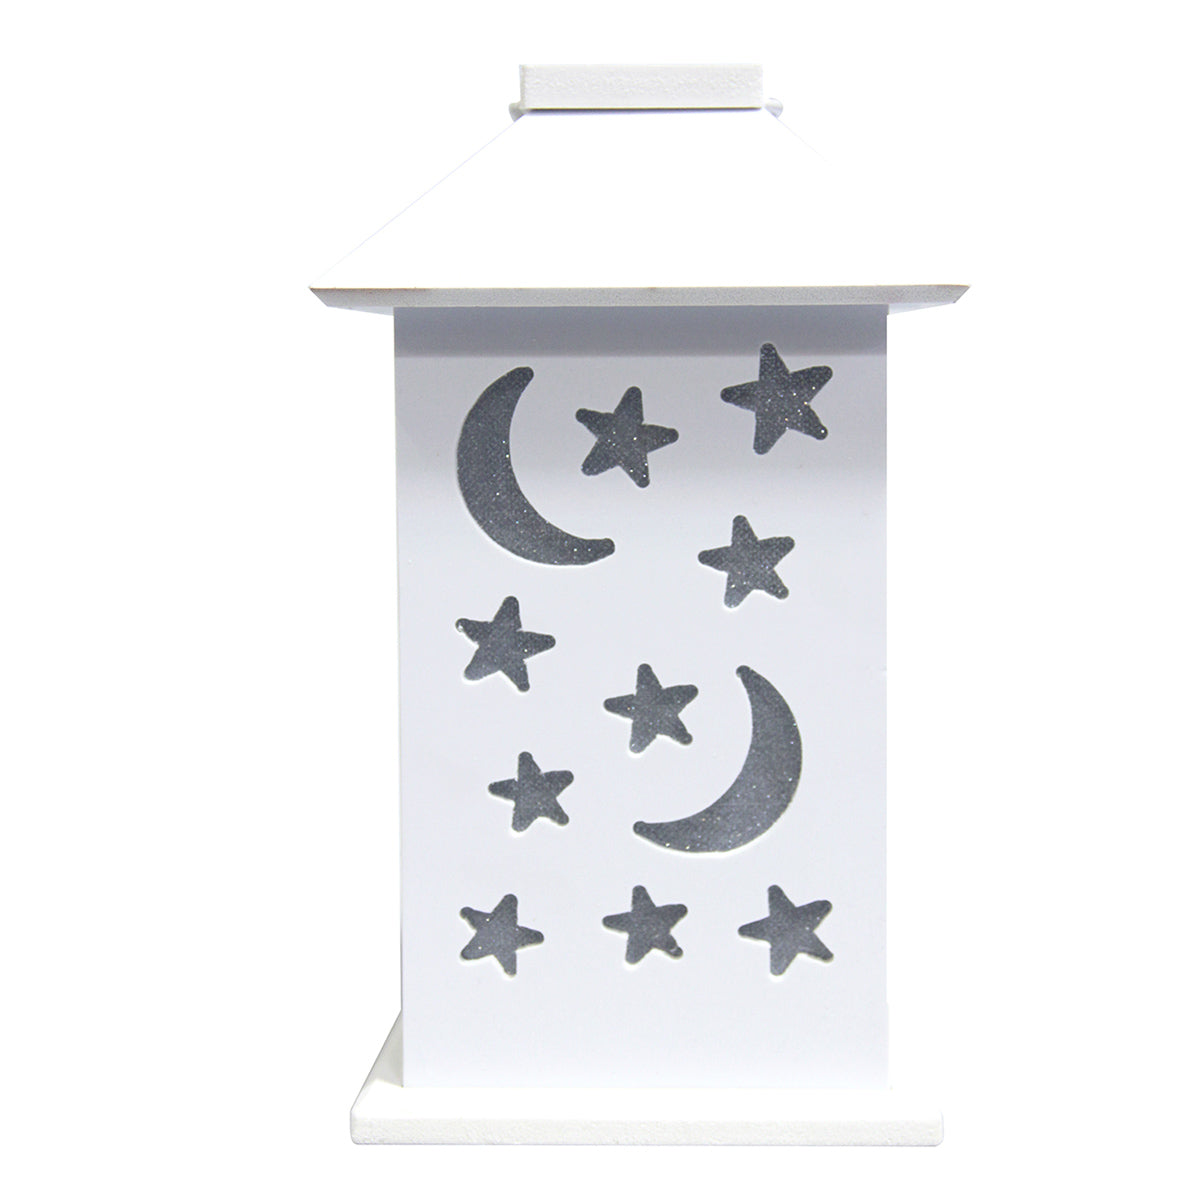 LED Nursery Kid Nightlight Table Lamp, White Moon Star Shape Cutout